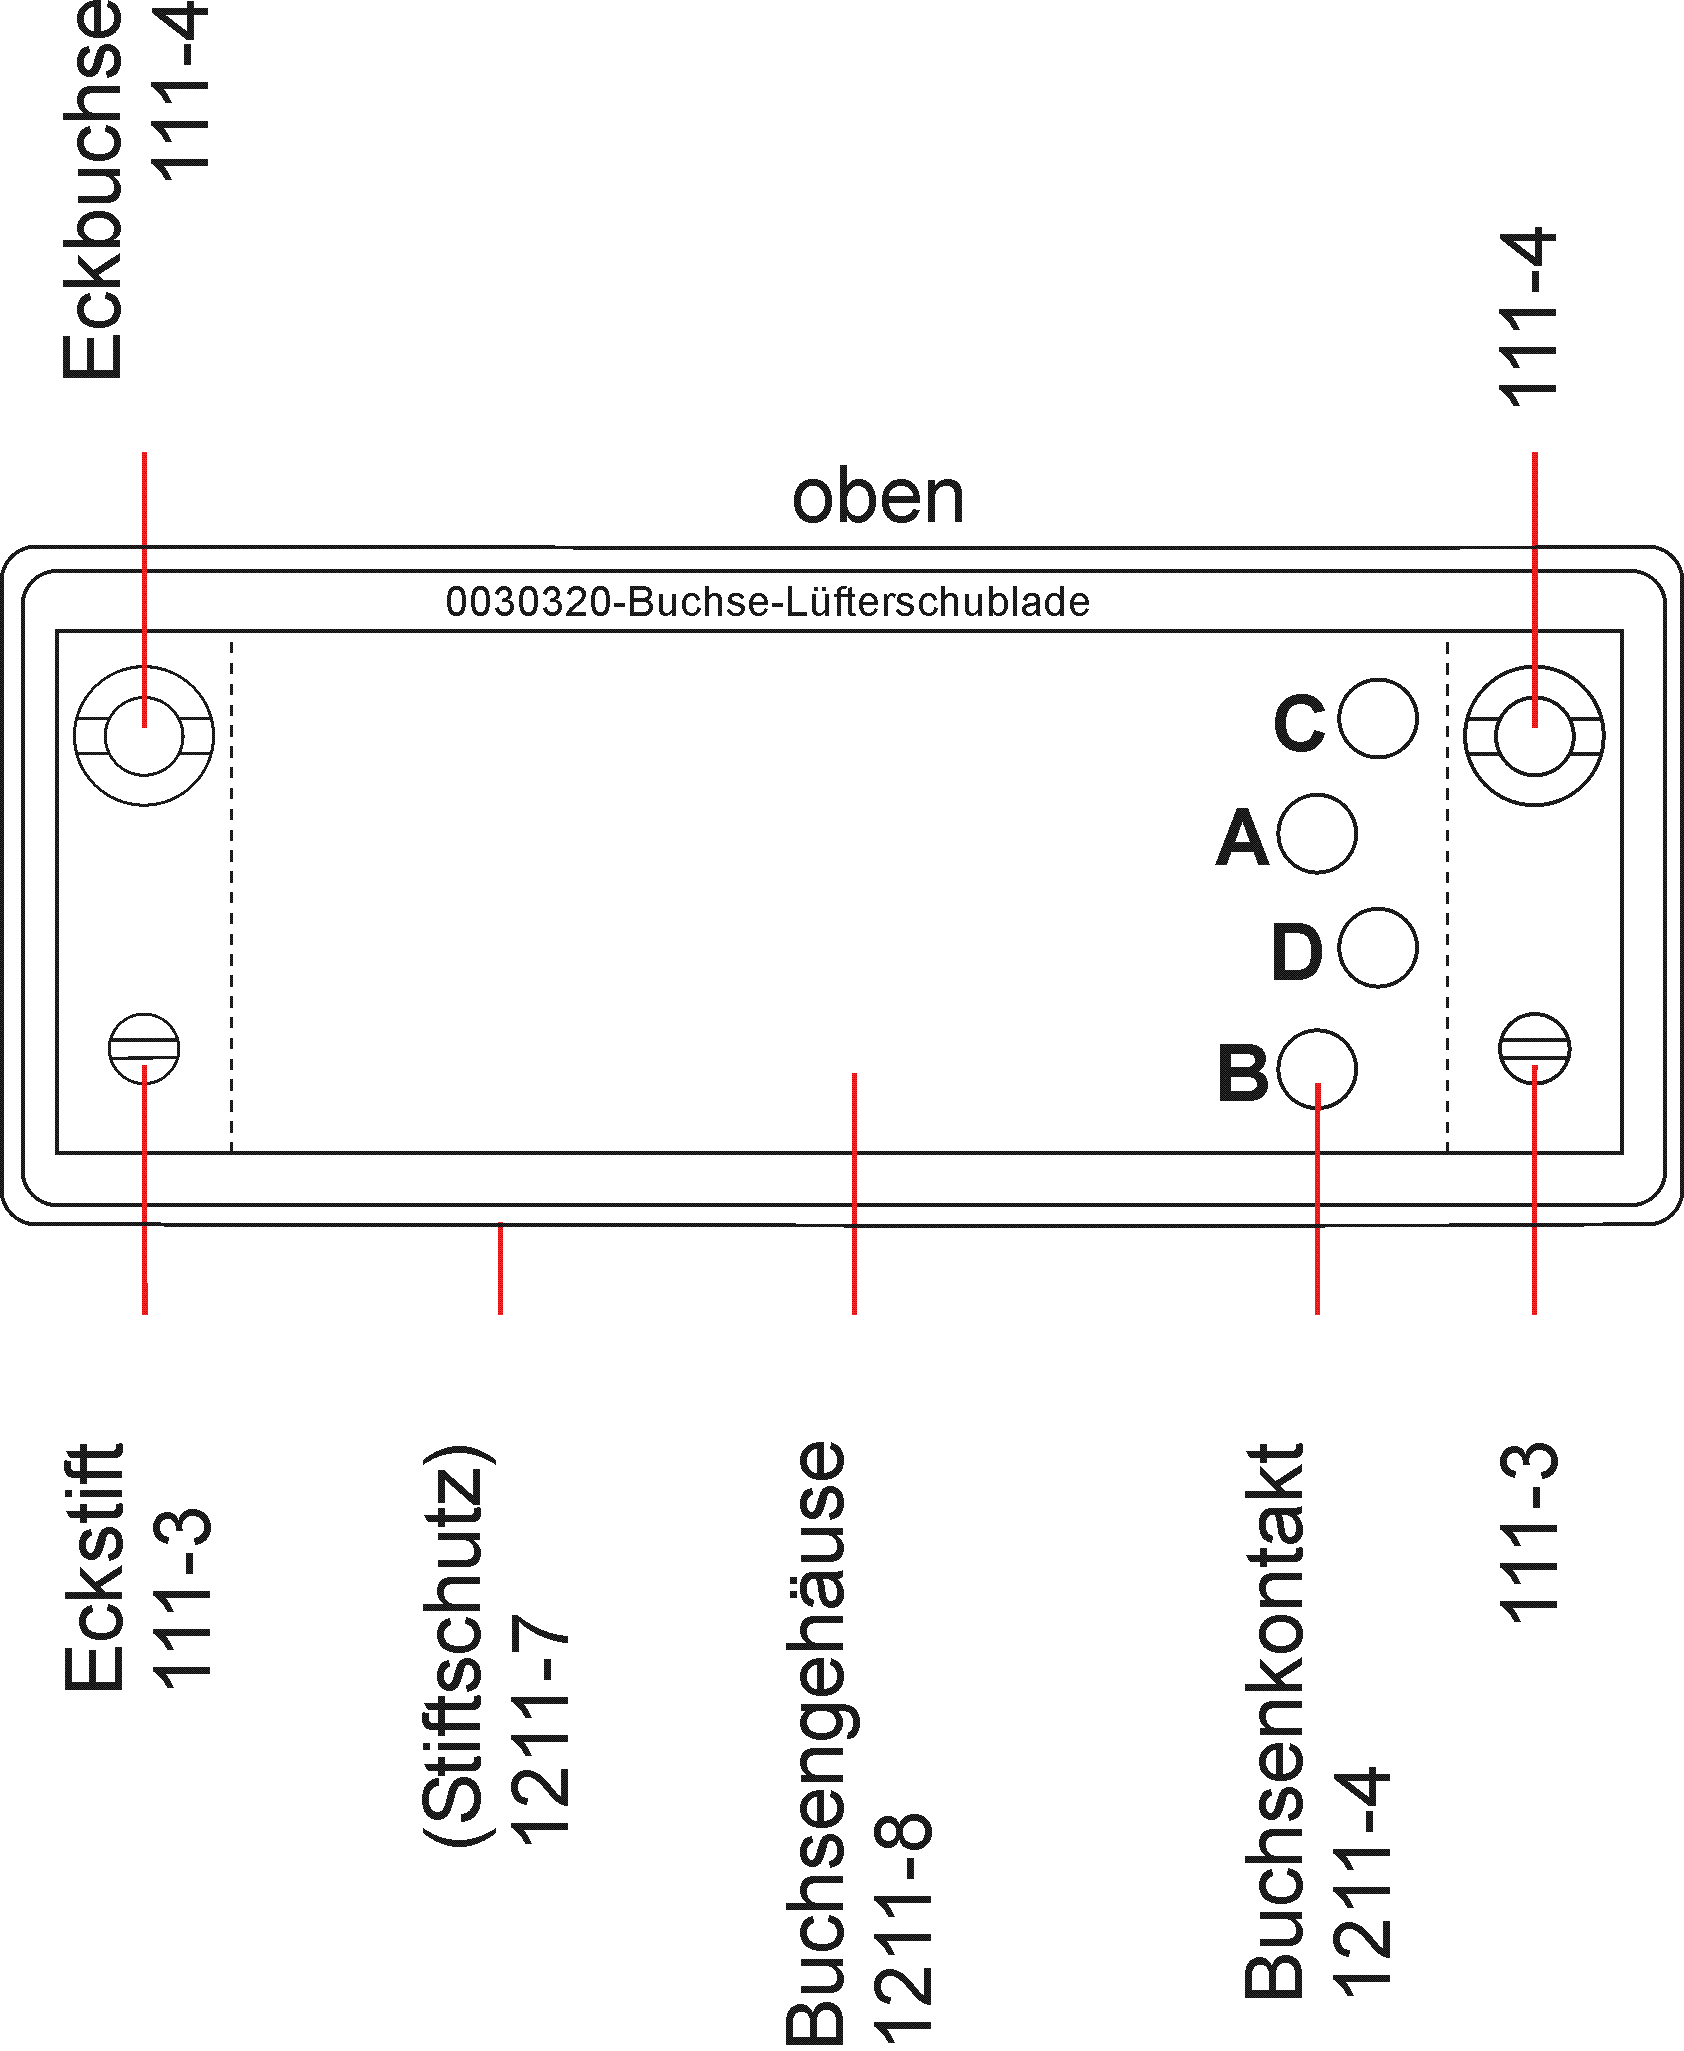 DESK_GmbH-0030320-Buchse-Lüfterschublade